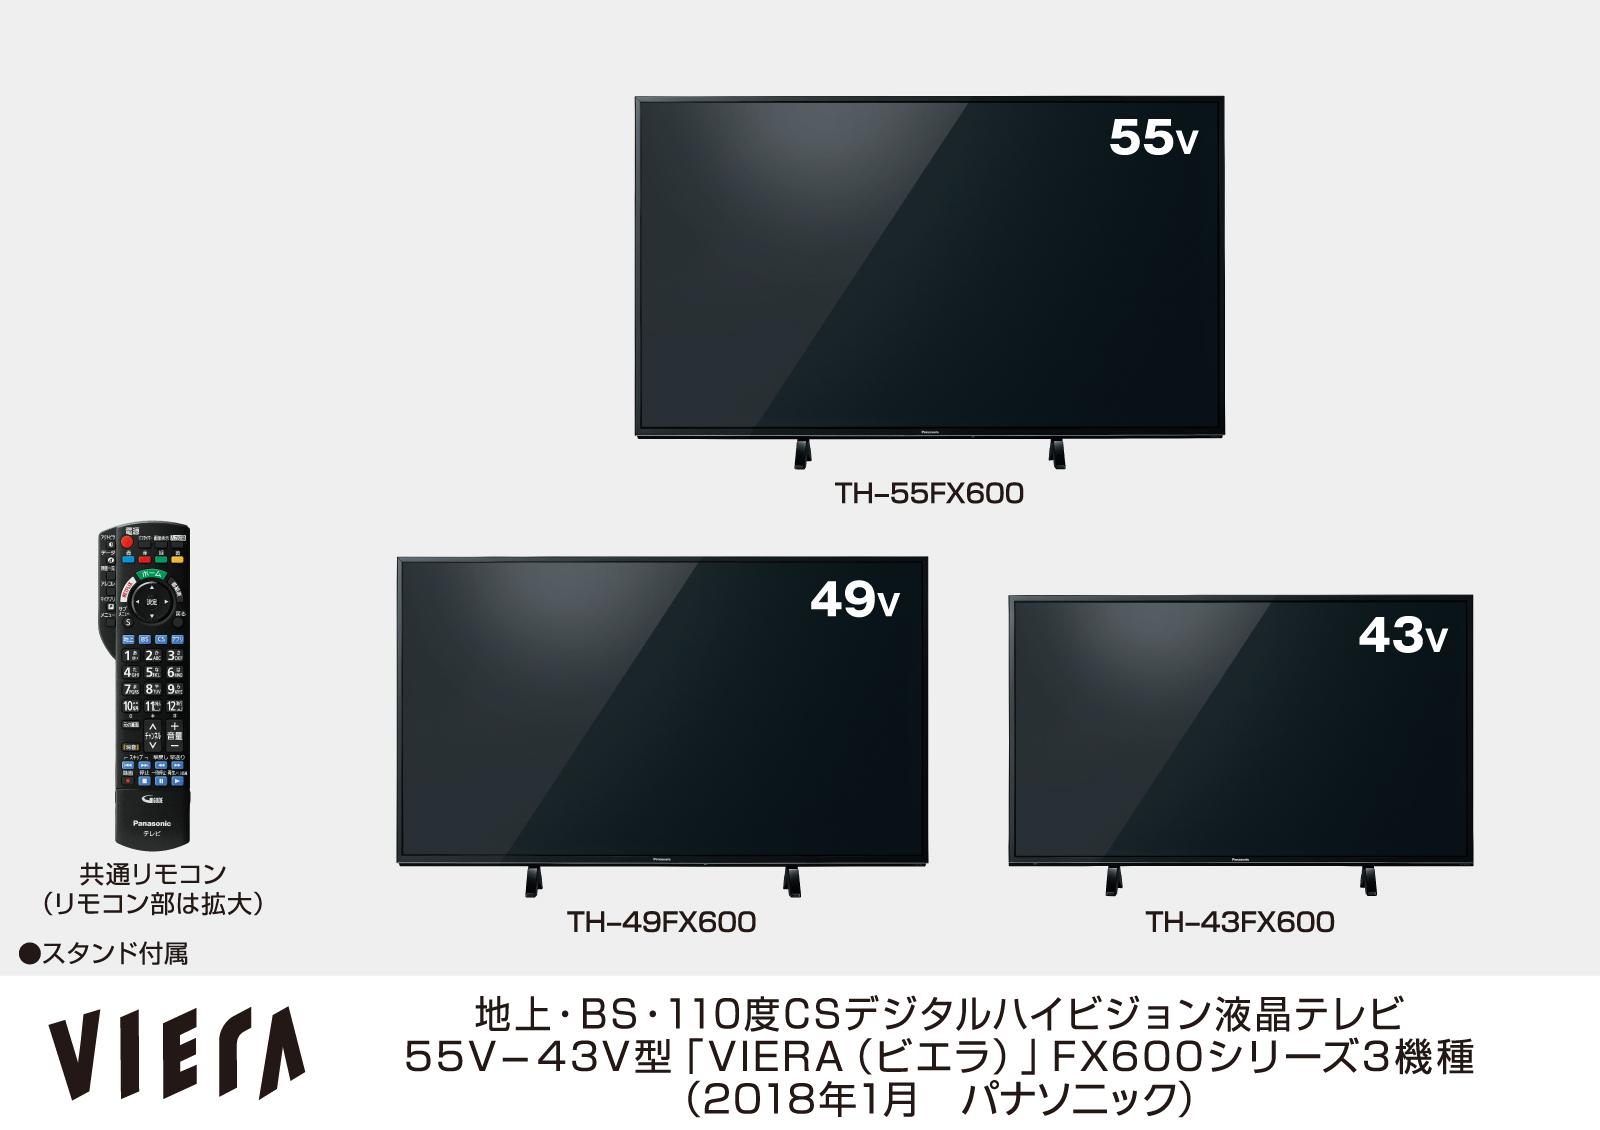 地上・BS・110度CSデジタルハイビジョン液晶テレビ 55V-43V型「VIERA（ビエラ）」 FX600シリーズ3機種、TH-55FX600、TH-49FX600、TH-43FX600